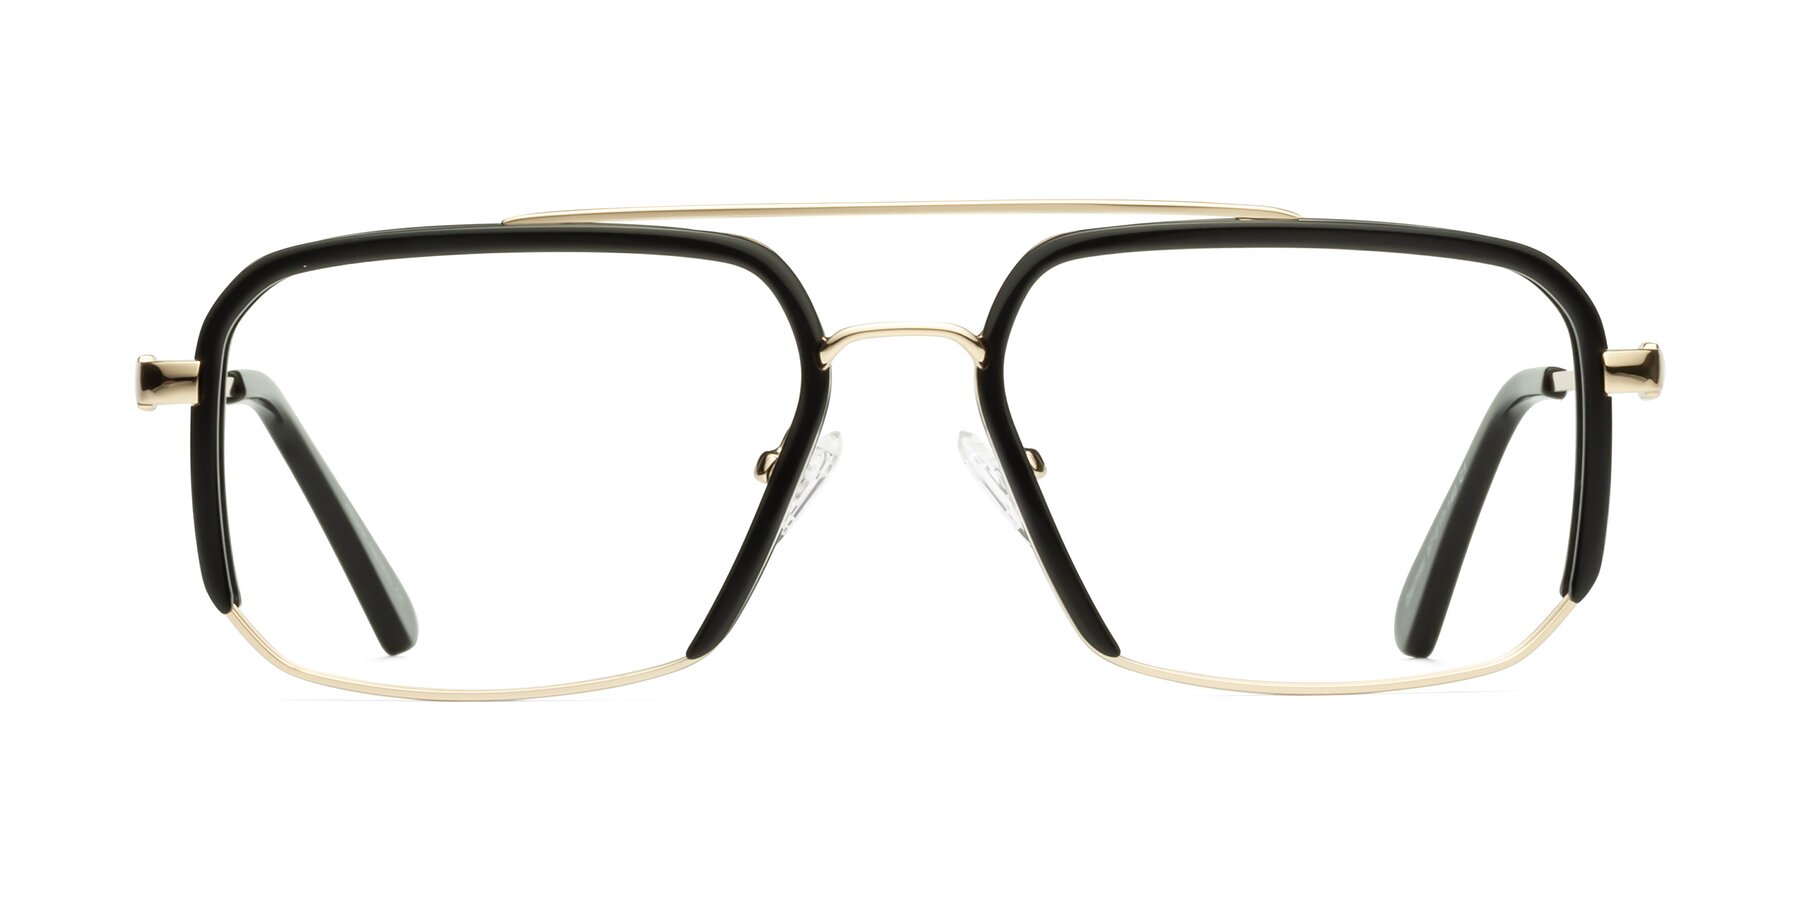 Dechter - Black / Gold Sunglasses Frame